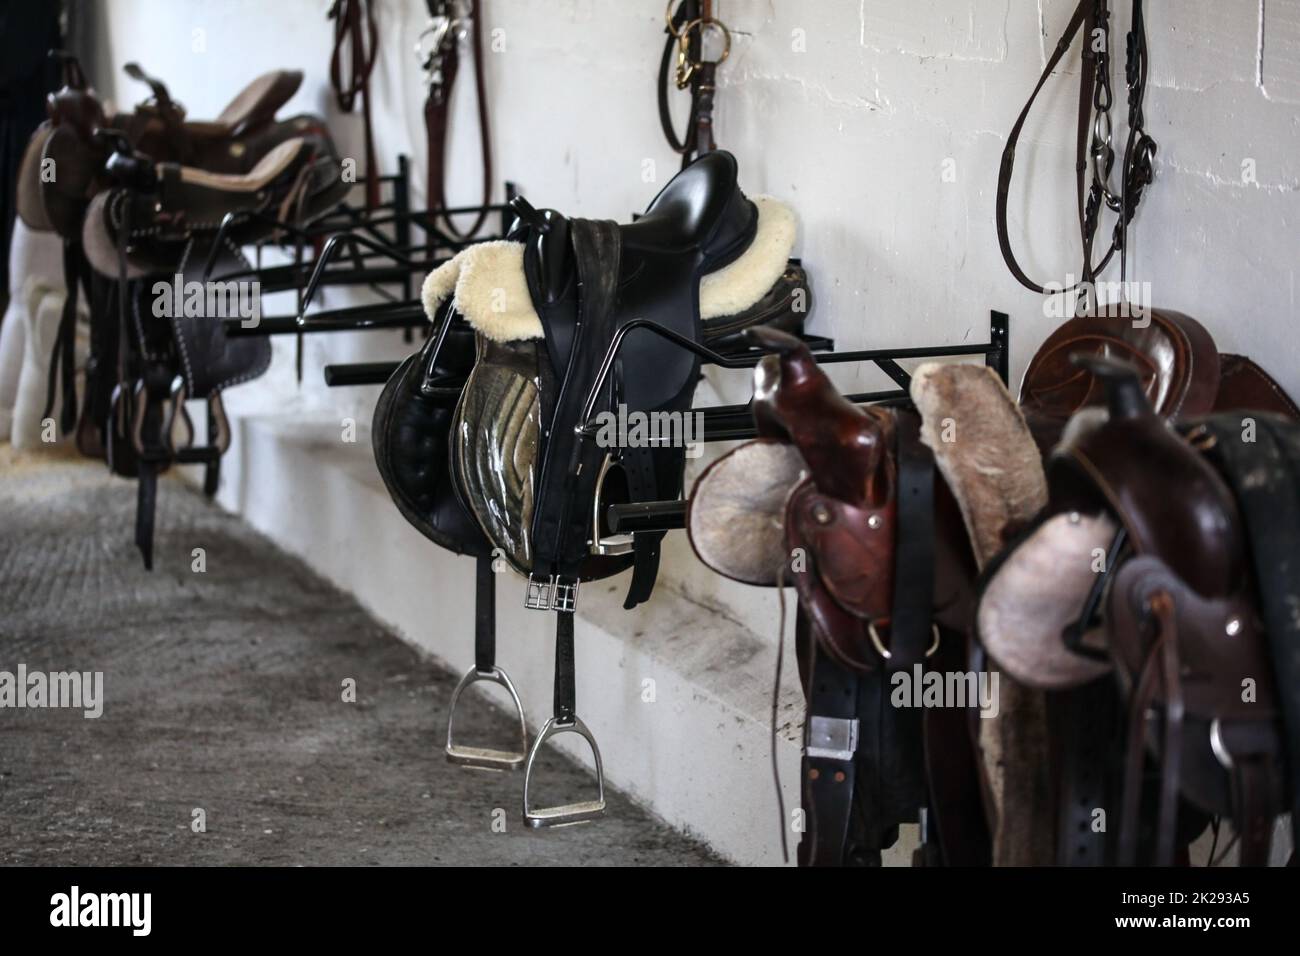 Cuero monturas de caballos y equipo descansando en perchas en el tack room Foto de stock